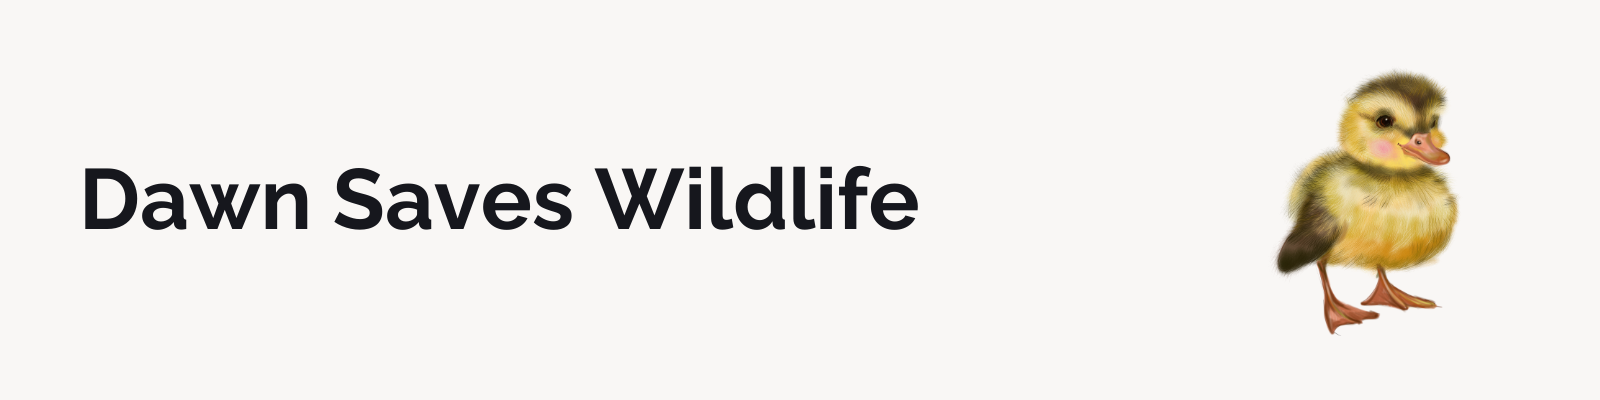 Cause marketing example - Dawn Saves Wildlife